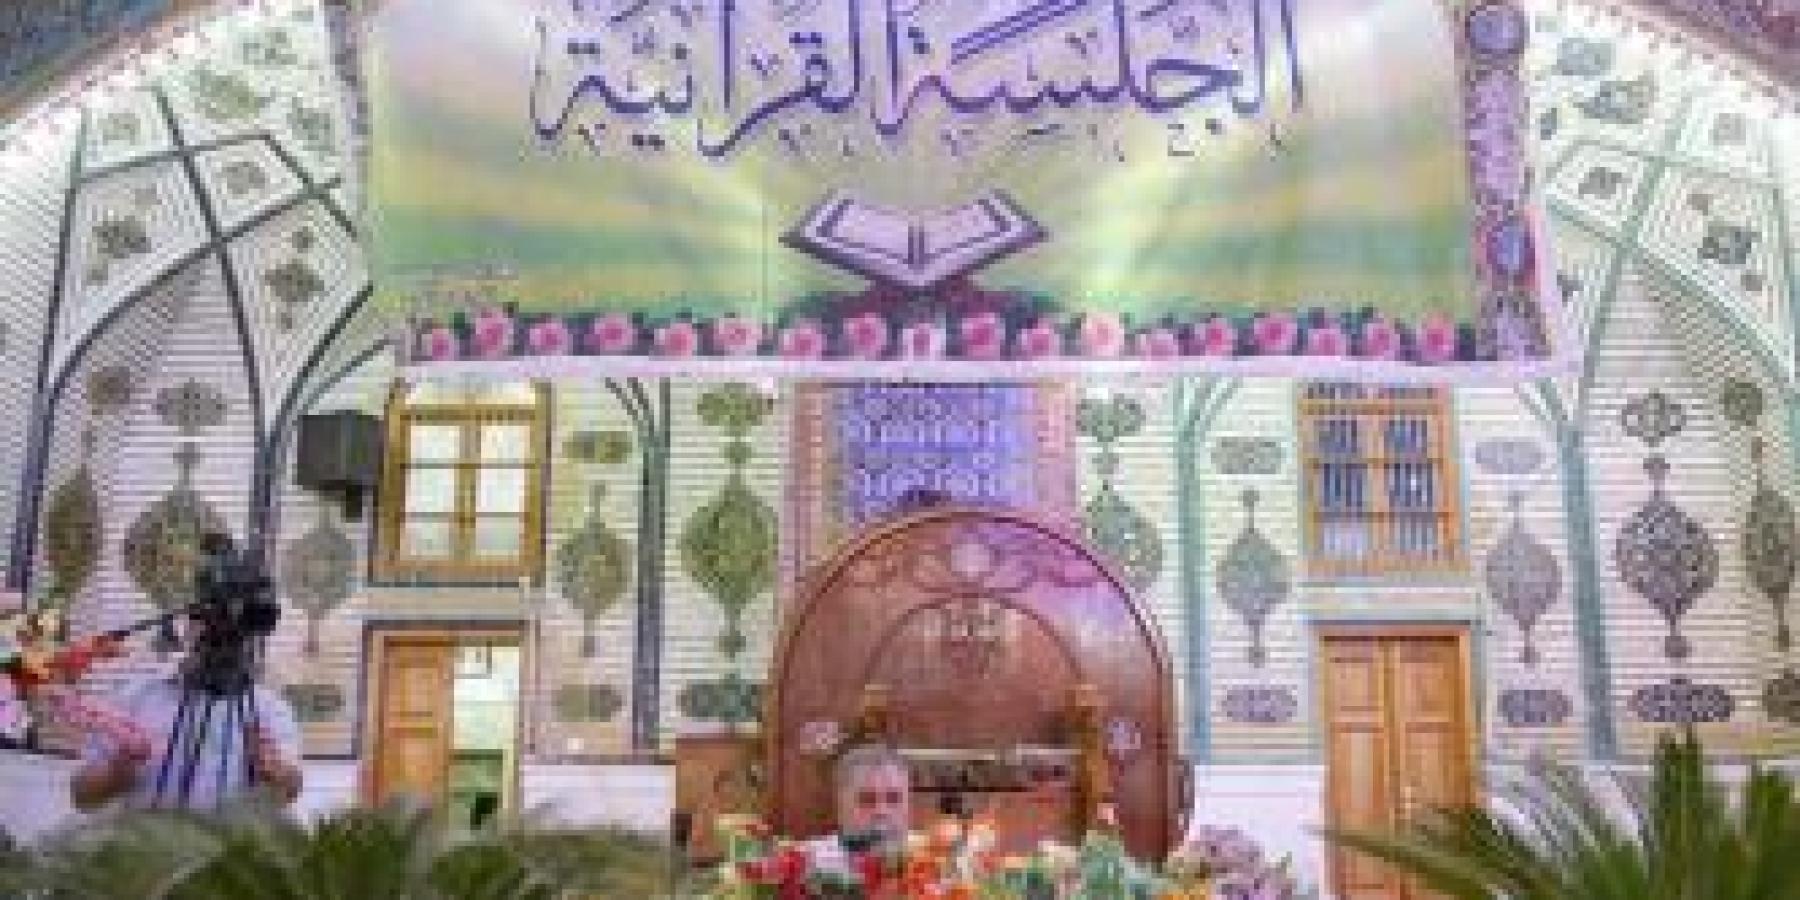 جلسات قرآنية يومية يحتضنها الصحن الحيدري بعد افتتاح دار القرآن الكريم في العتبة العلوية المقدسة